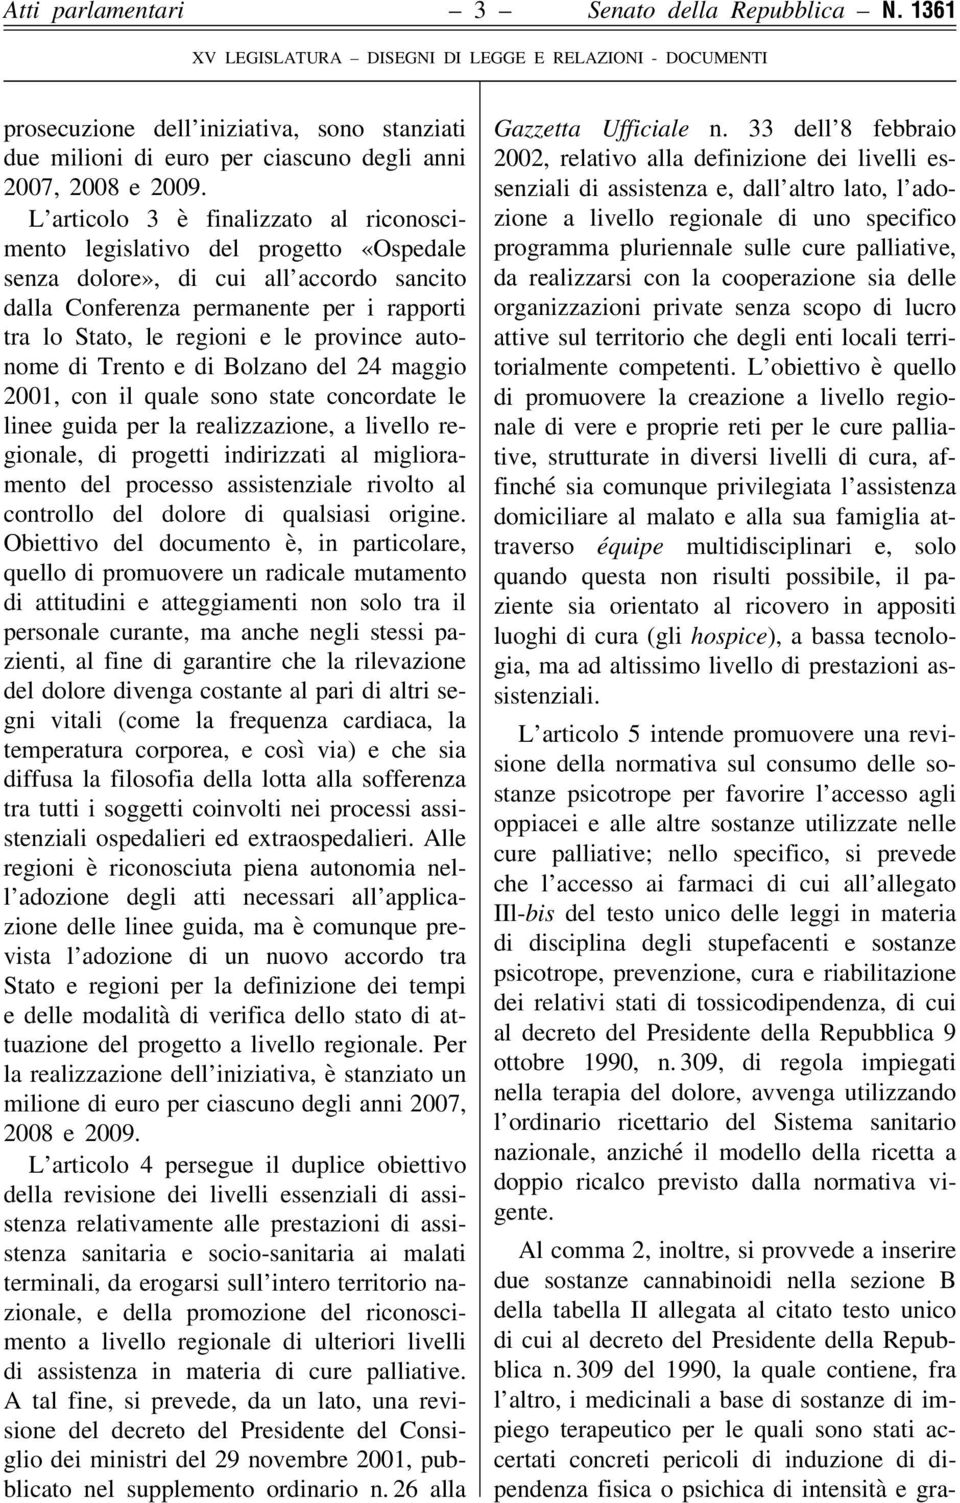 province autonome di Trento e di Bolzano del 24 maggio 2001, con il quale sono state concordate le linee guida per la realizzazione, a livello regionale, di progetti indirizzati al miglioramento del